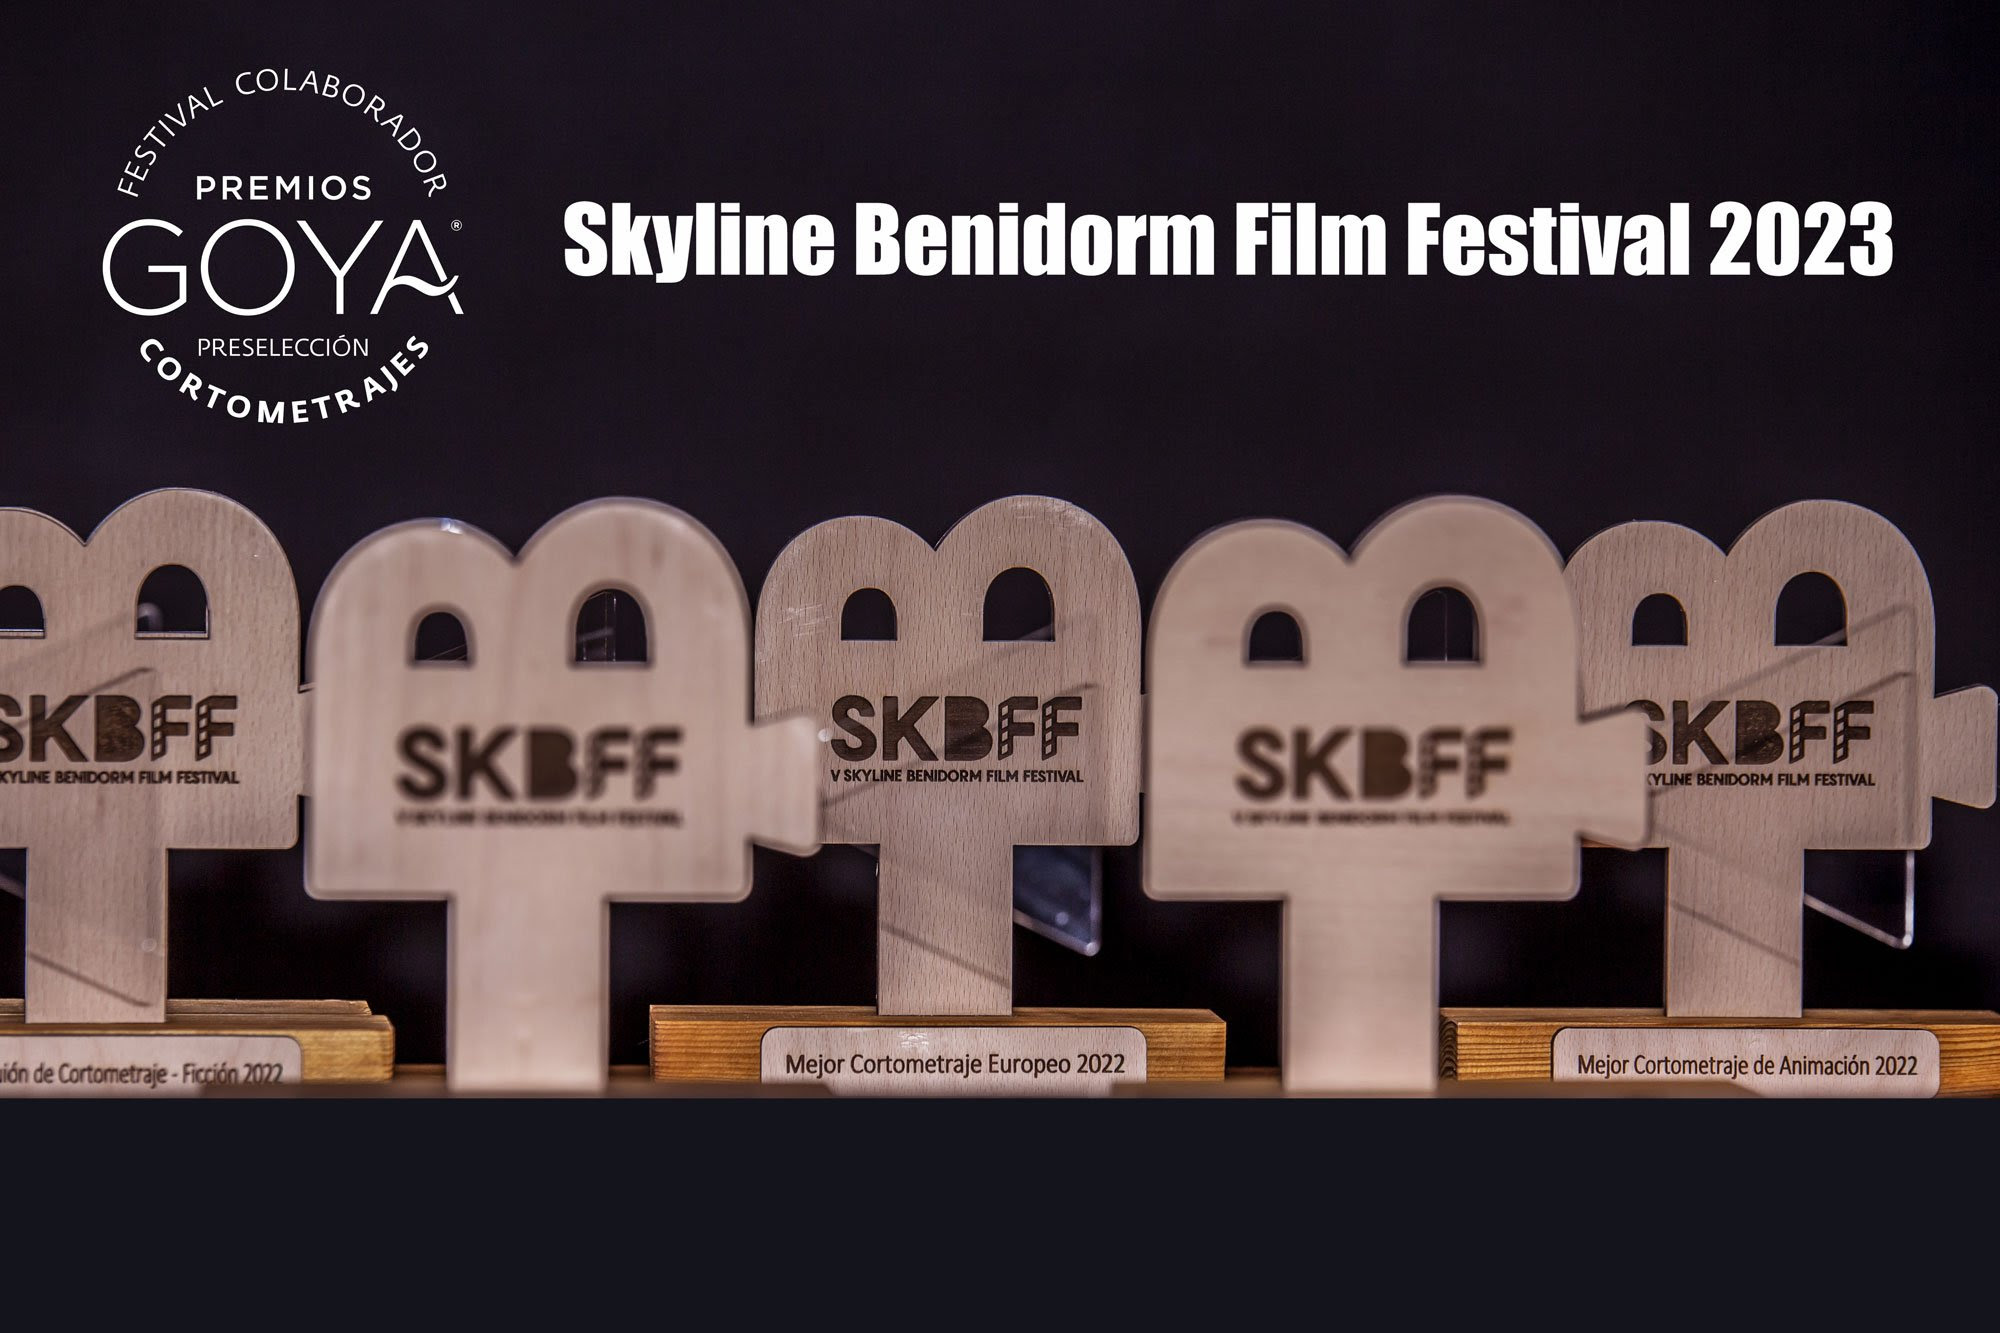 La 7ª edición de Skyline Benidorm Film Festival abre su periodo de inscripción